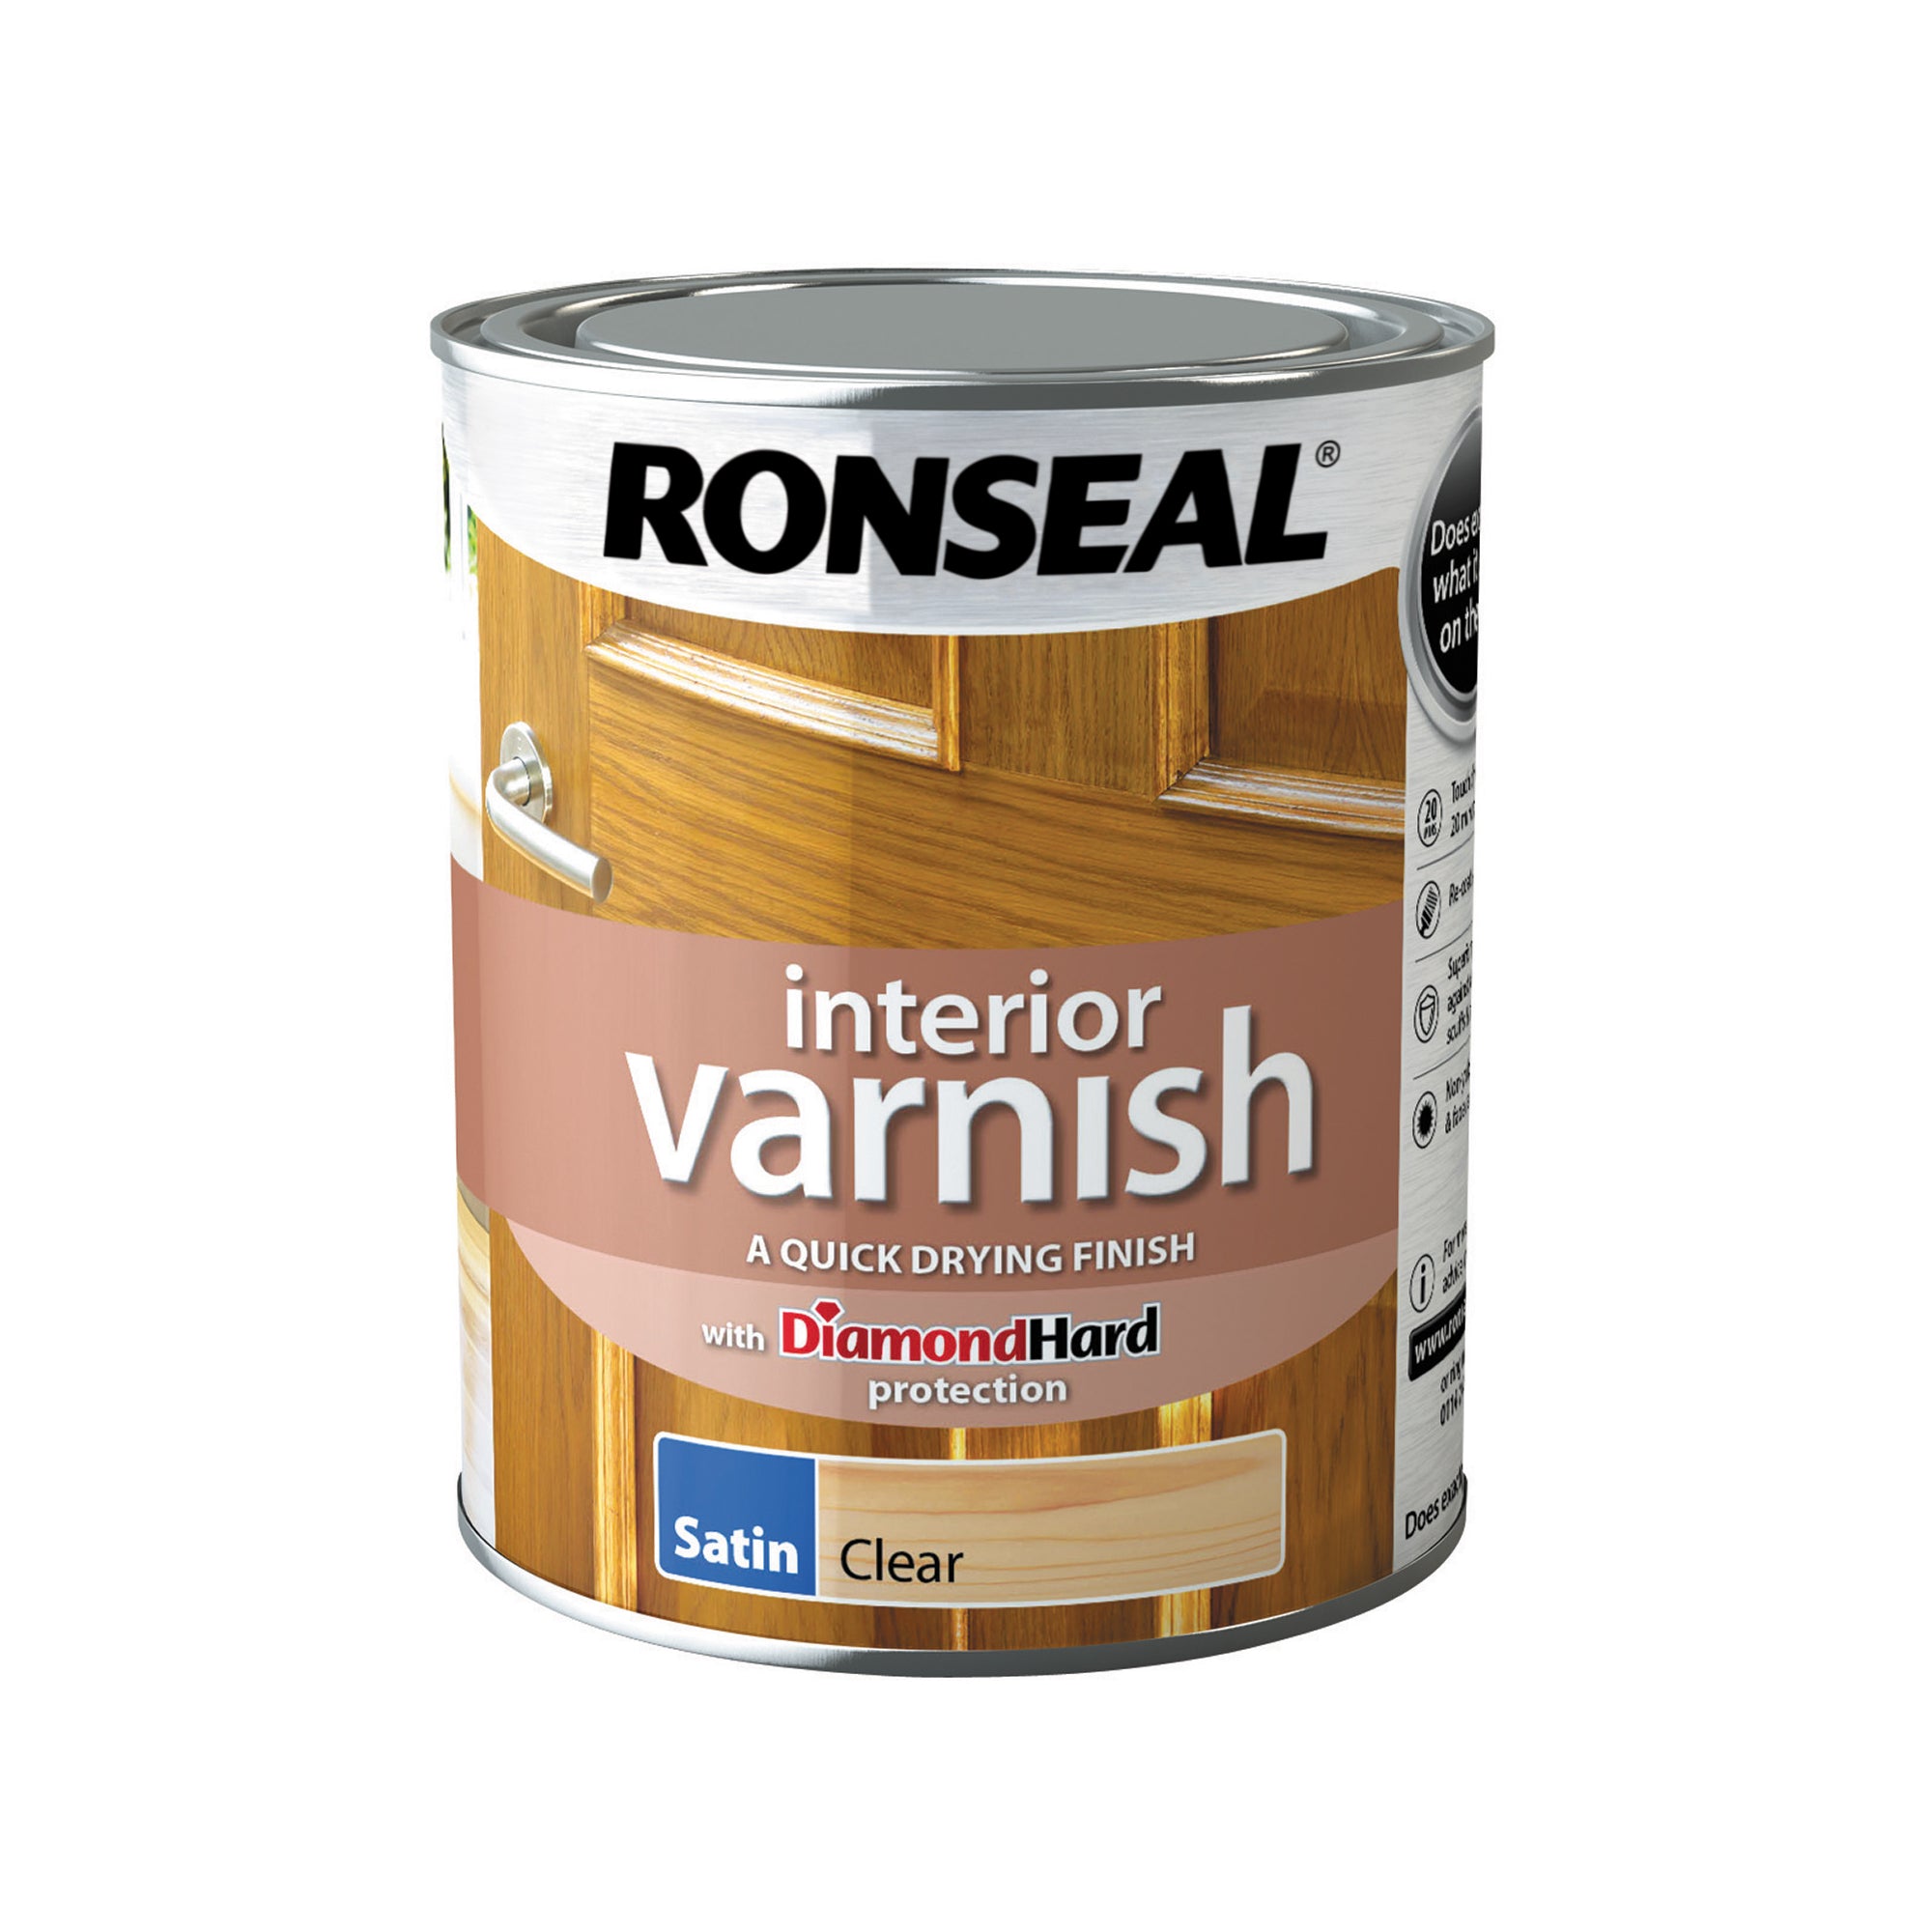 Ronseal-Interior-Diamond-Hard-Varnish-Clear-(Satin)-750ml